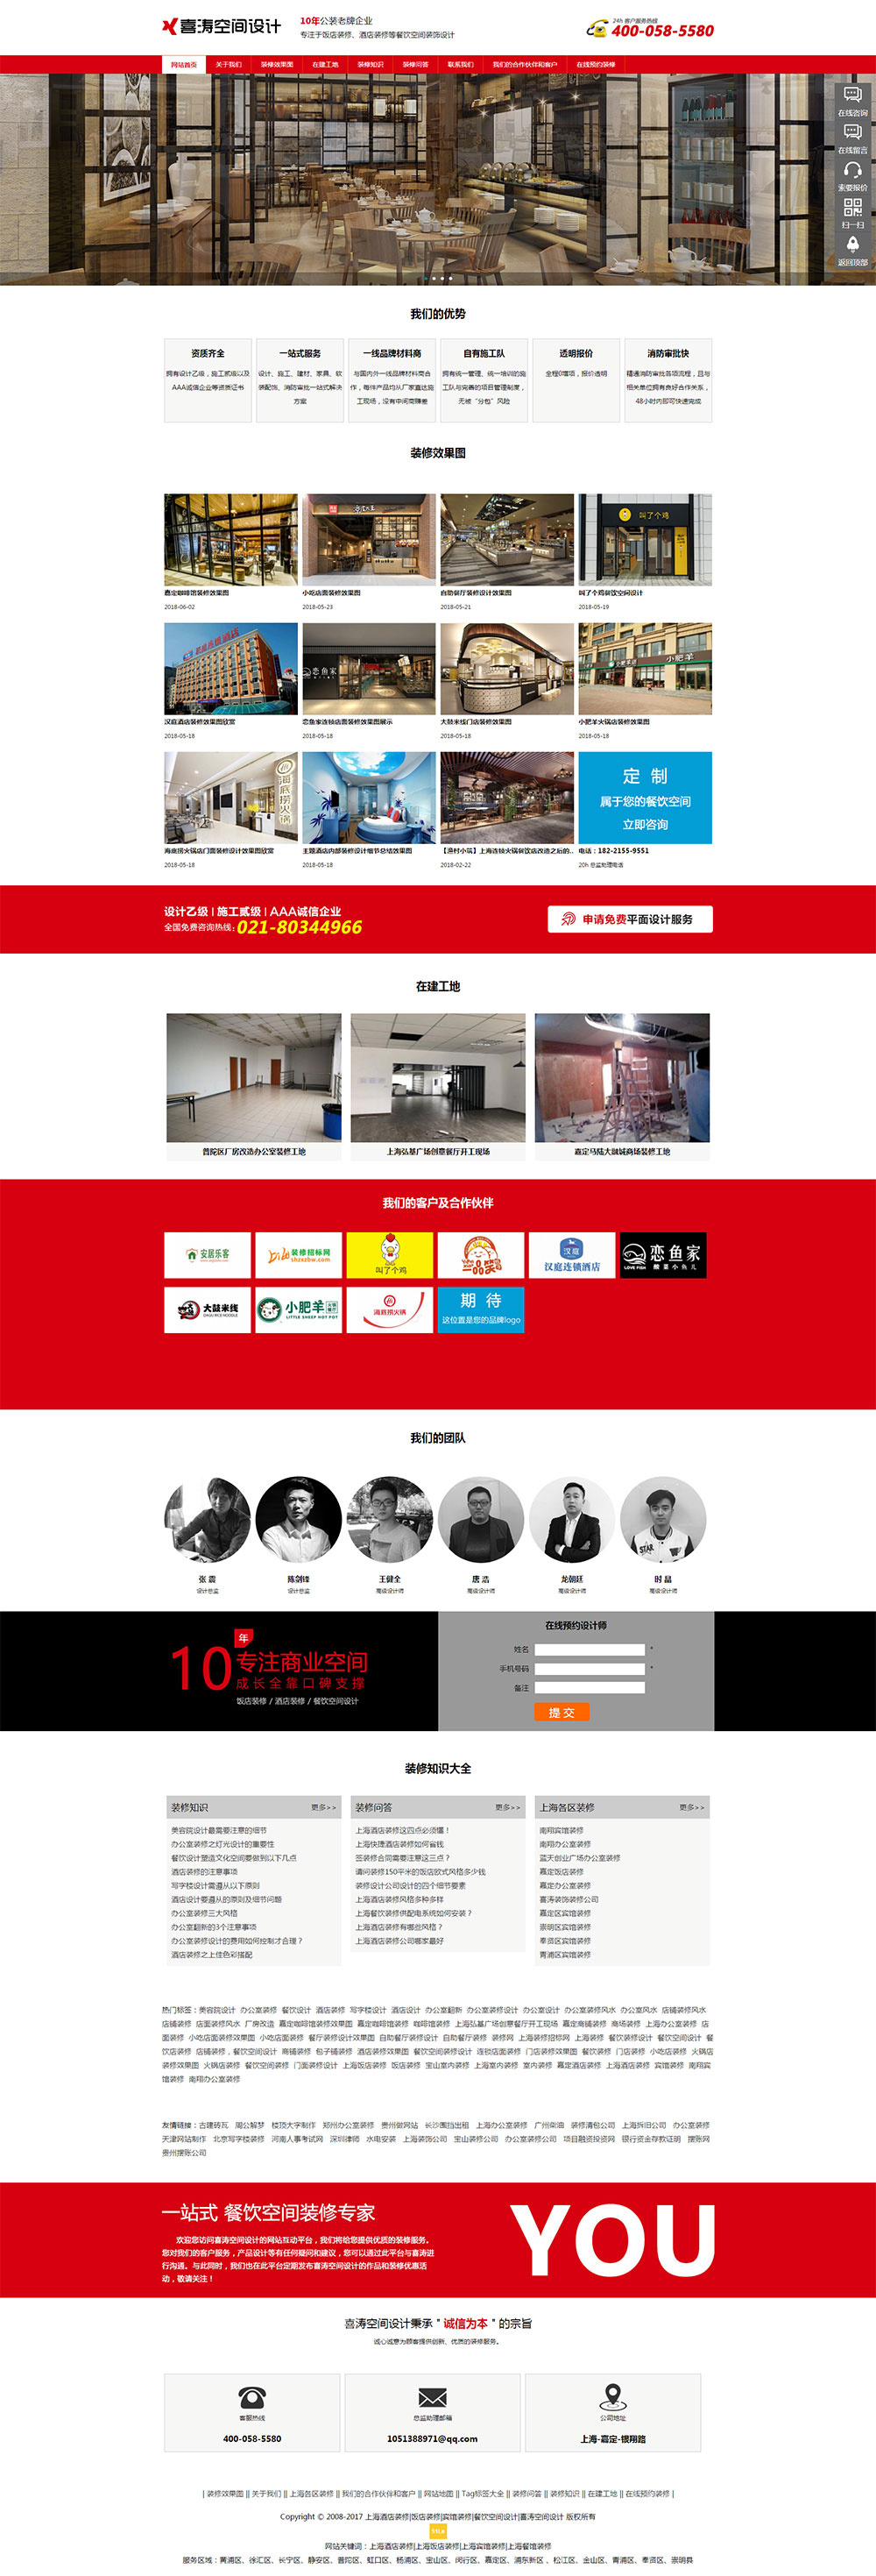 喜涛空间设计餐饮网站（www.shgzgs.cn）